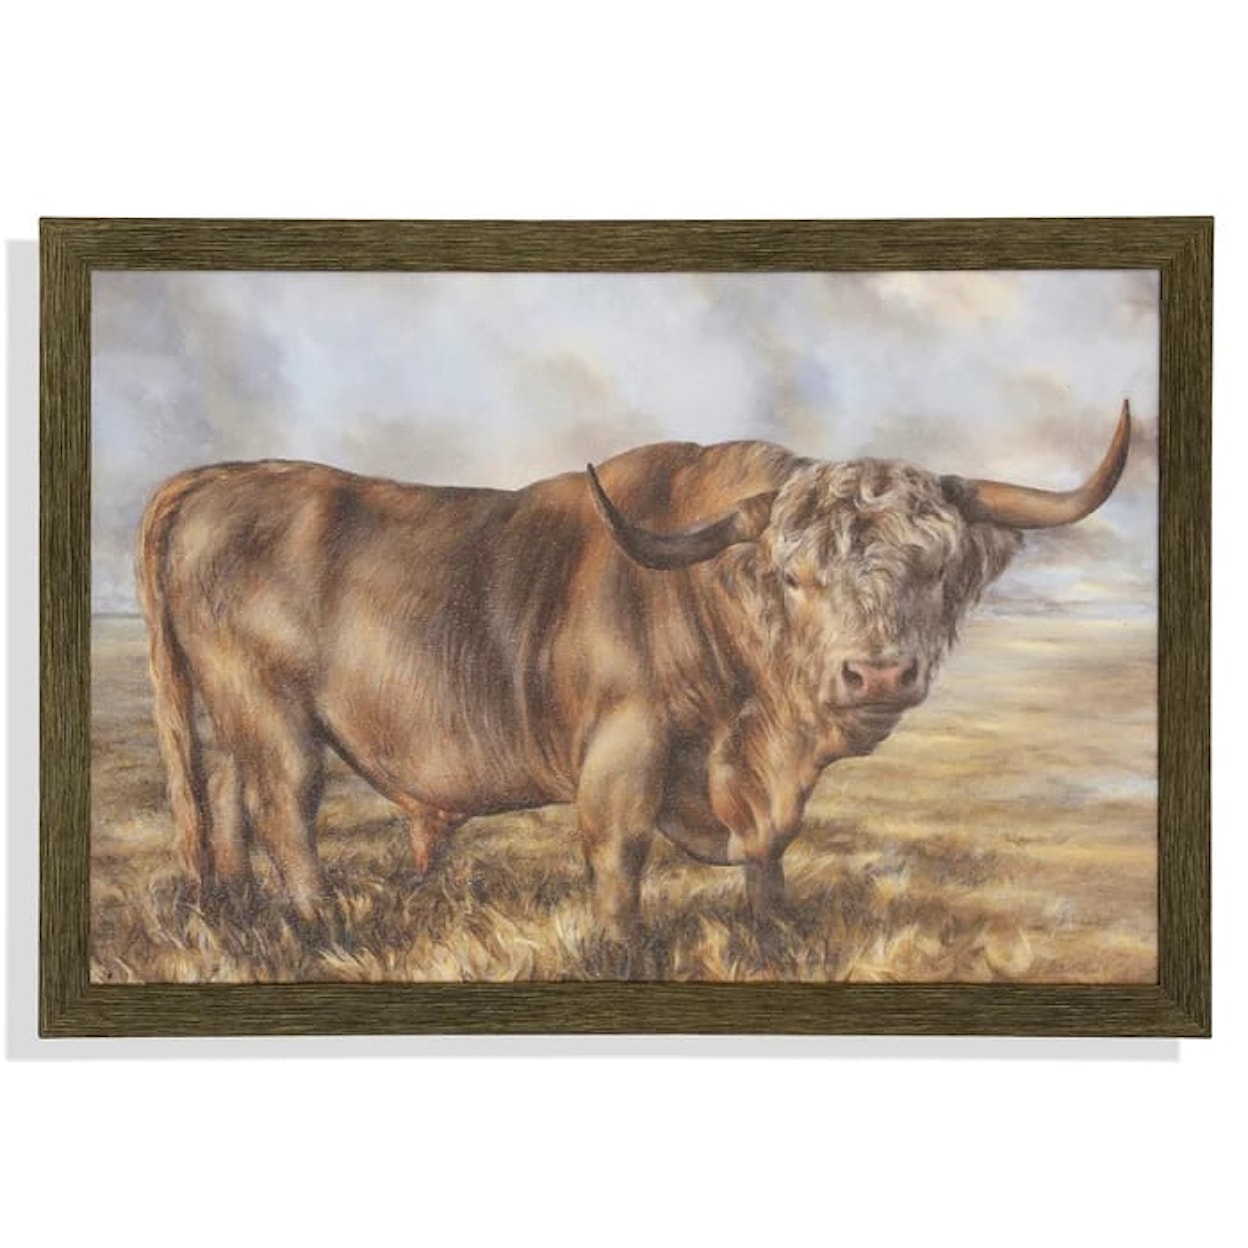 StyleCraft Accessories Highland Brown Bull